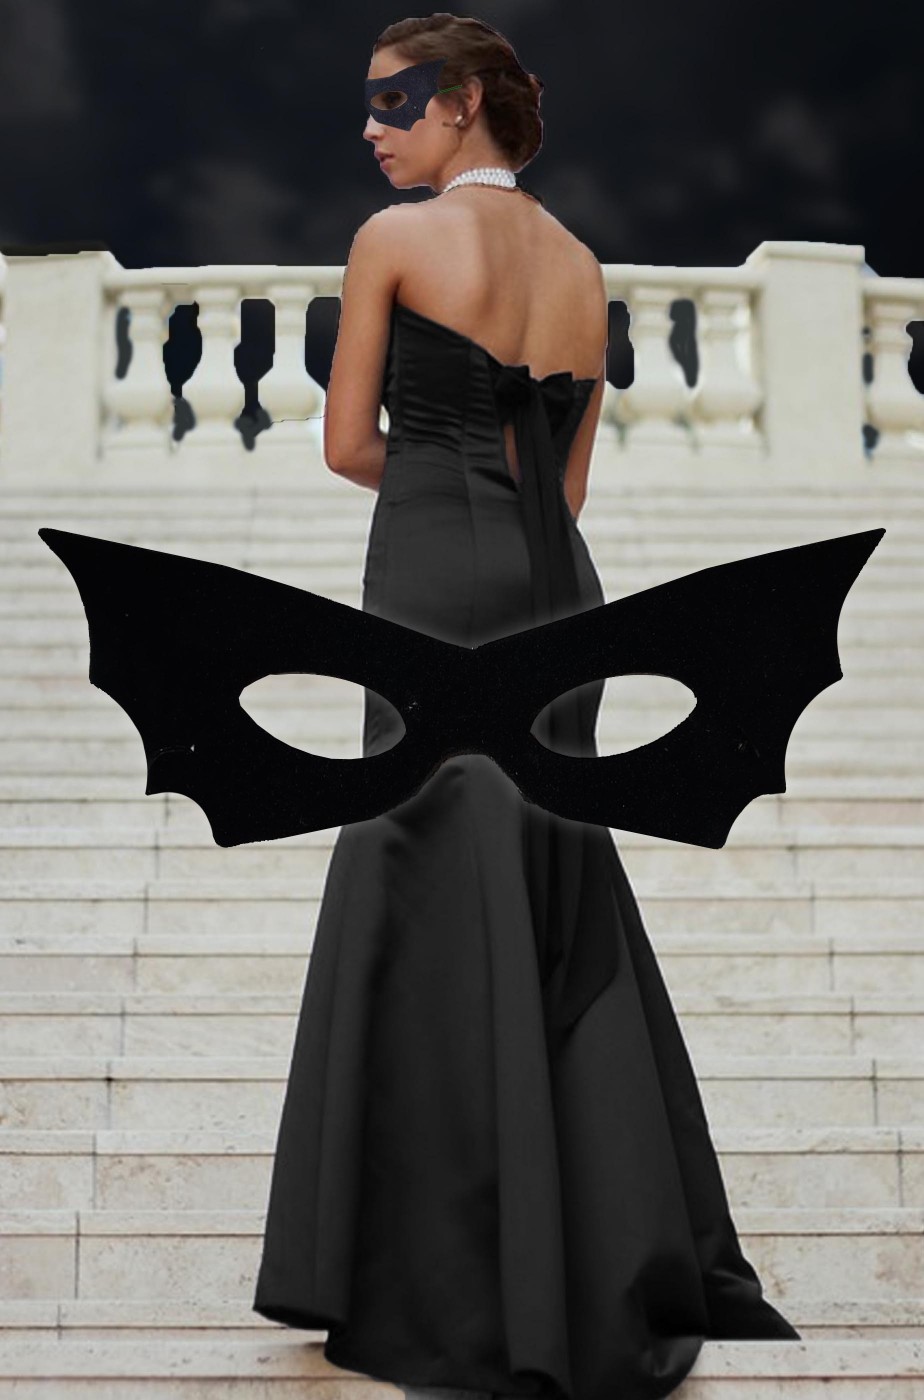 Maschera di carnevale nera domino pipistrello elegante